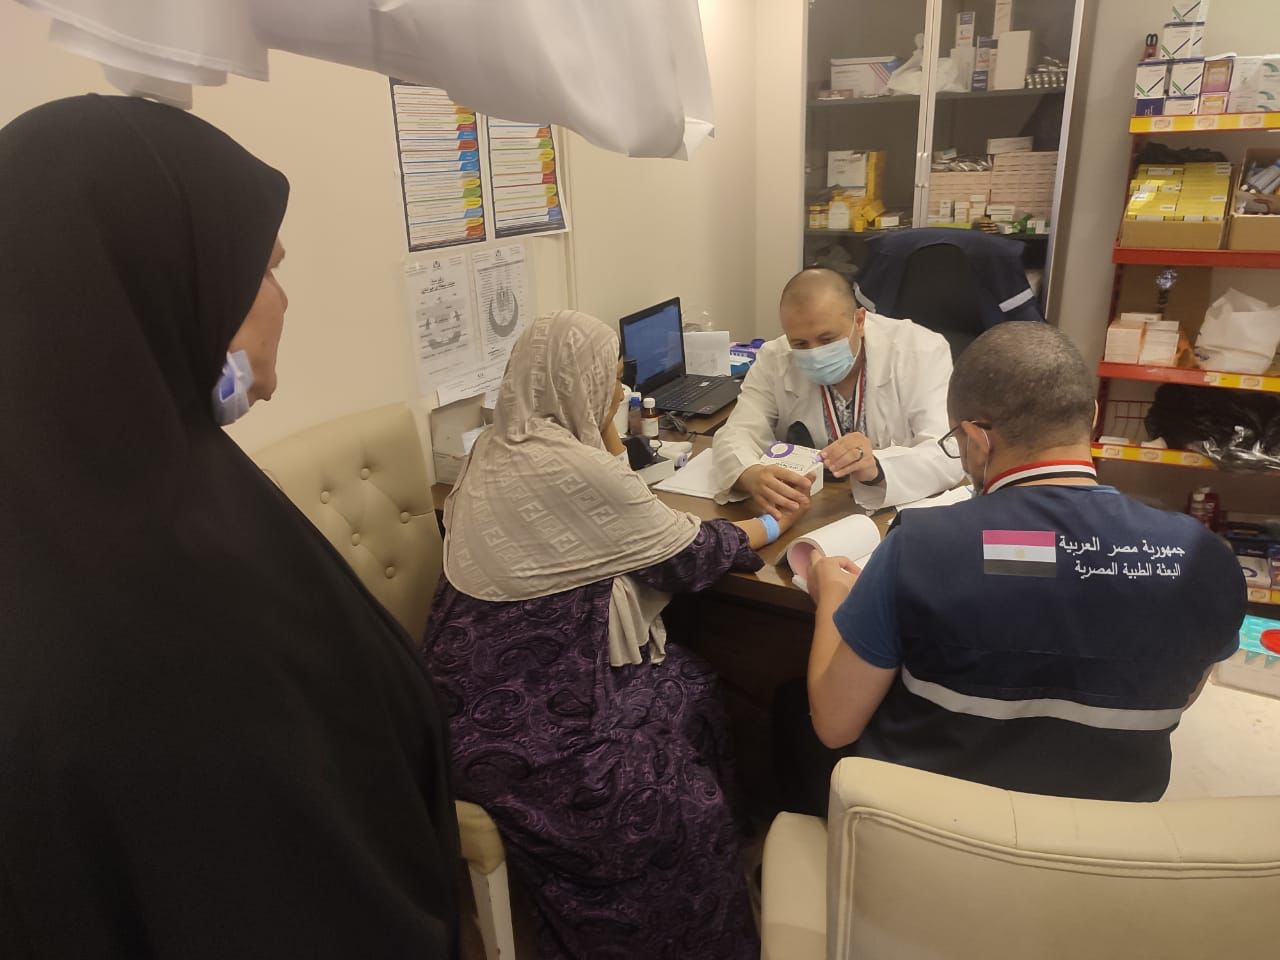 الصحة»: البعثة الطبية المصرية قدمت خدماتها لـ 1503 حجاج في عيادات المدينة  المنورة ومكة المكرمة | أموال الغد